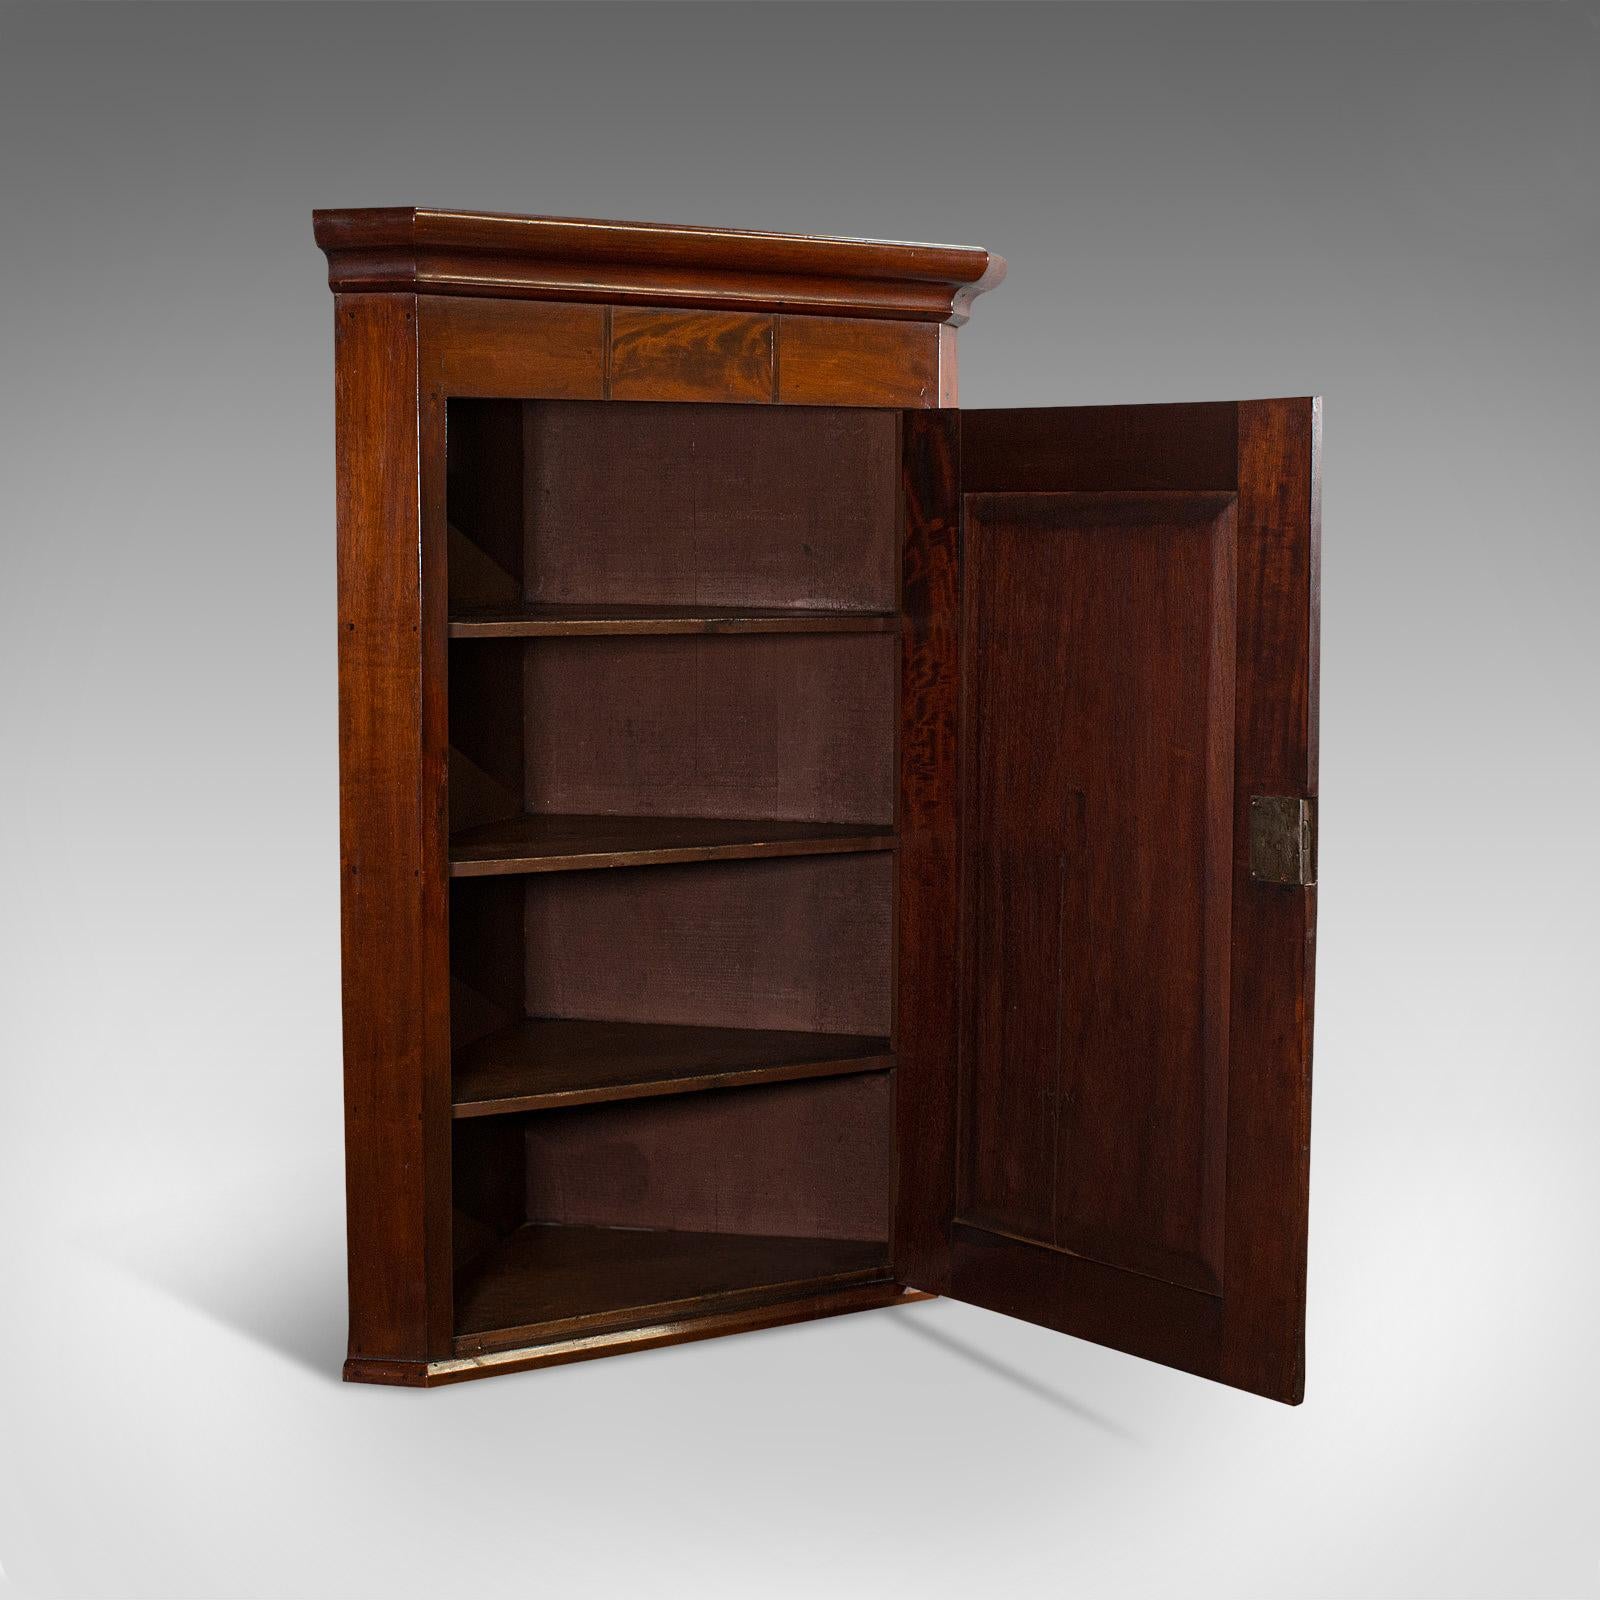 Il s'agit d'un meuble d'angle ancien. Cabinet anglais en acajou et en noyer avec des incrustations et des détails de qualité, datant de la période géorgienne, vers 1800.

La finition de qualité supérieure confère un attrait de collection.
Patine